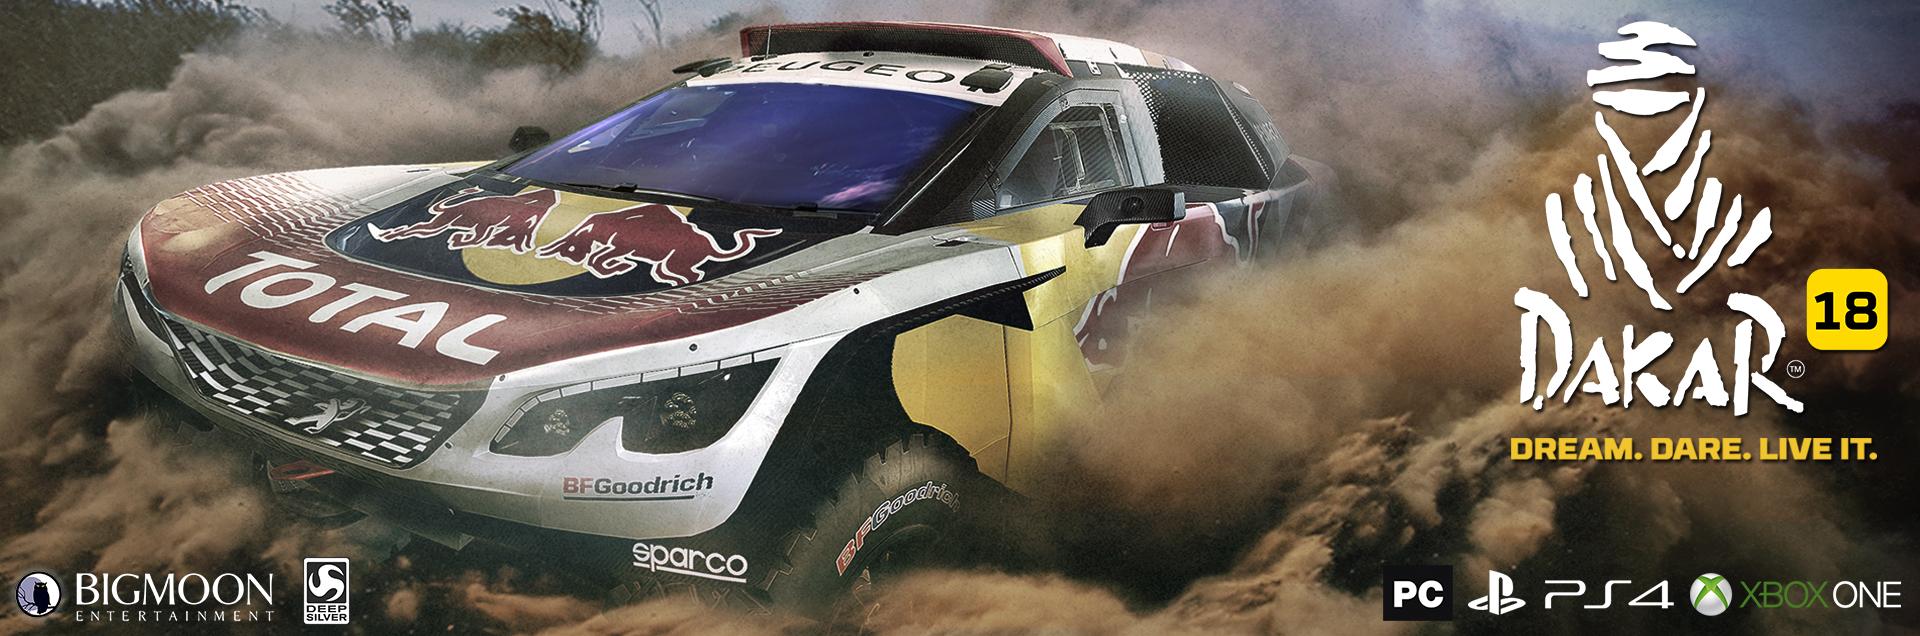 Анонс Dakar 18 - симулятор гонок ралли в большом открытом мире 